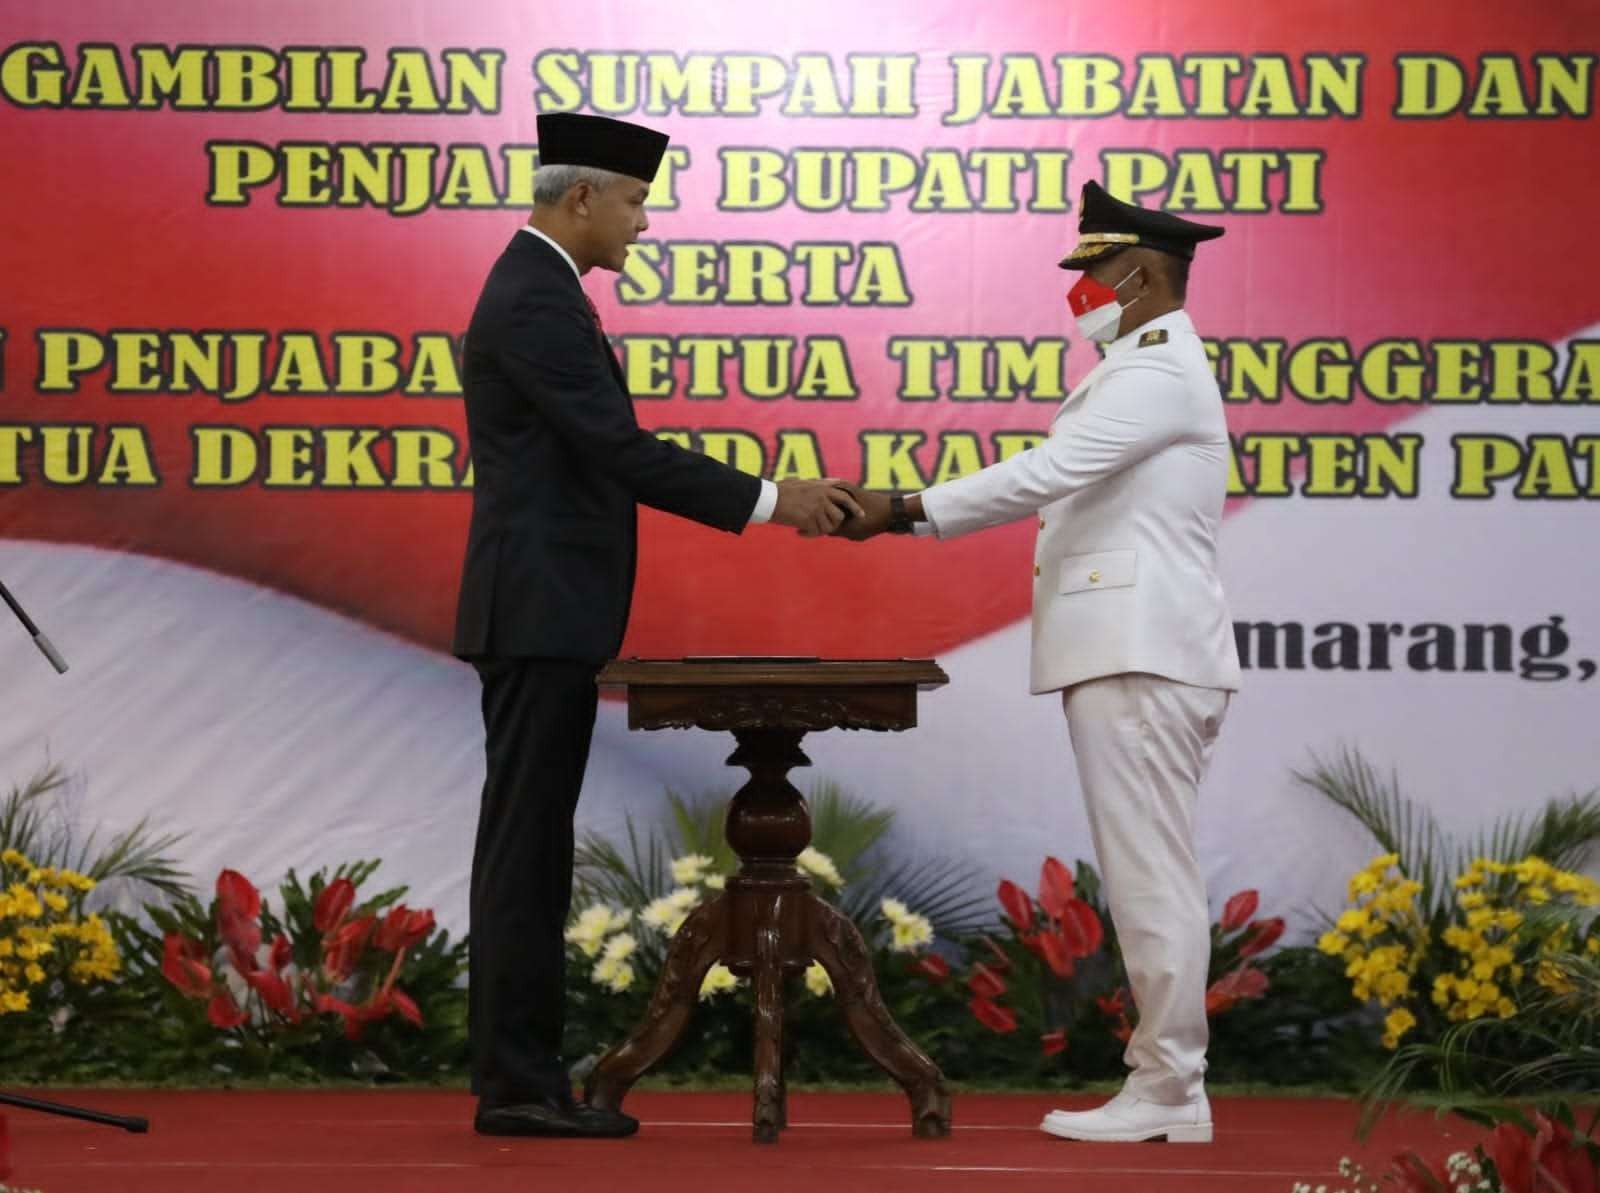 Gubernur Jawa Tengah Ganjar Pranowo lantik Henggar Budi Anggoro sebagai pejabat Bupati Pati. (Foto: Dokumentasi Jateng)